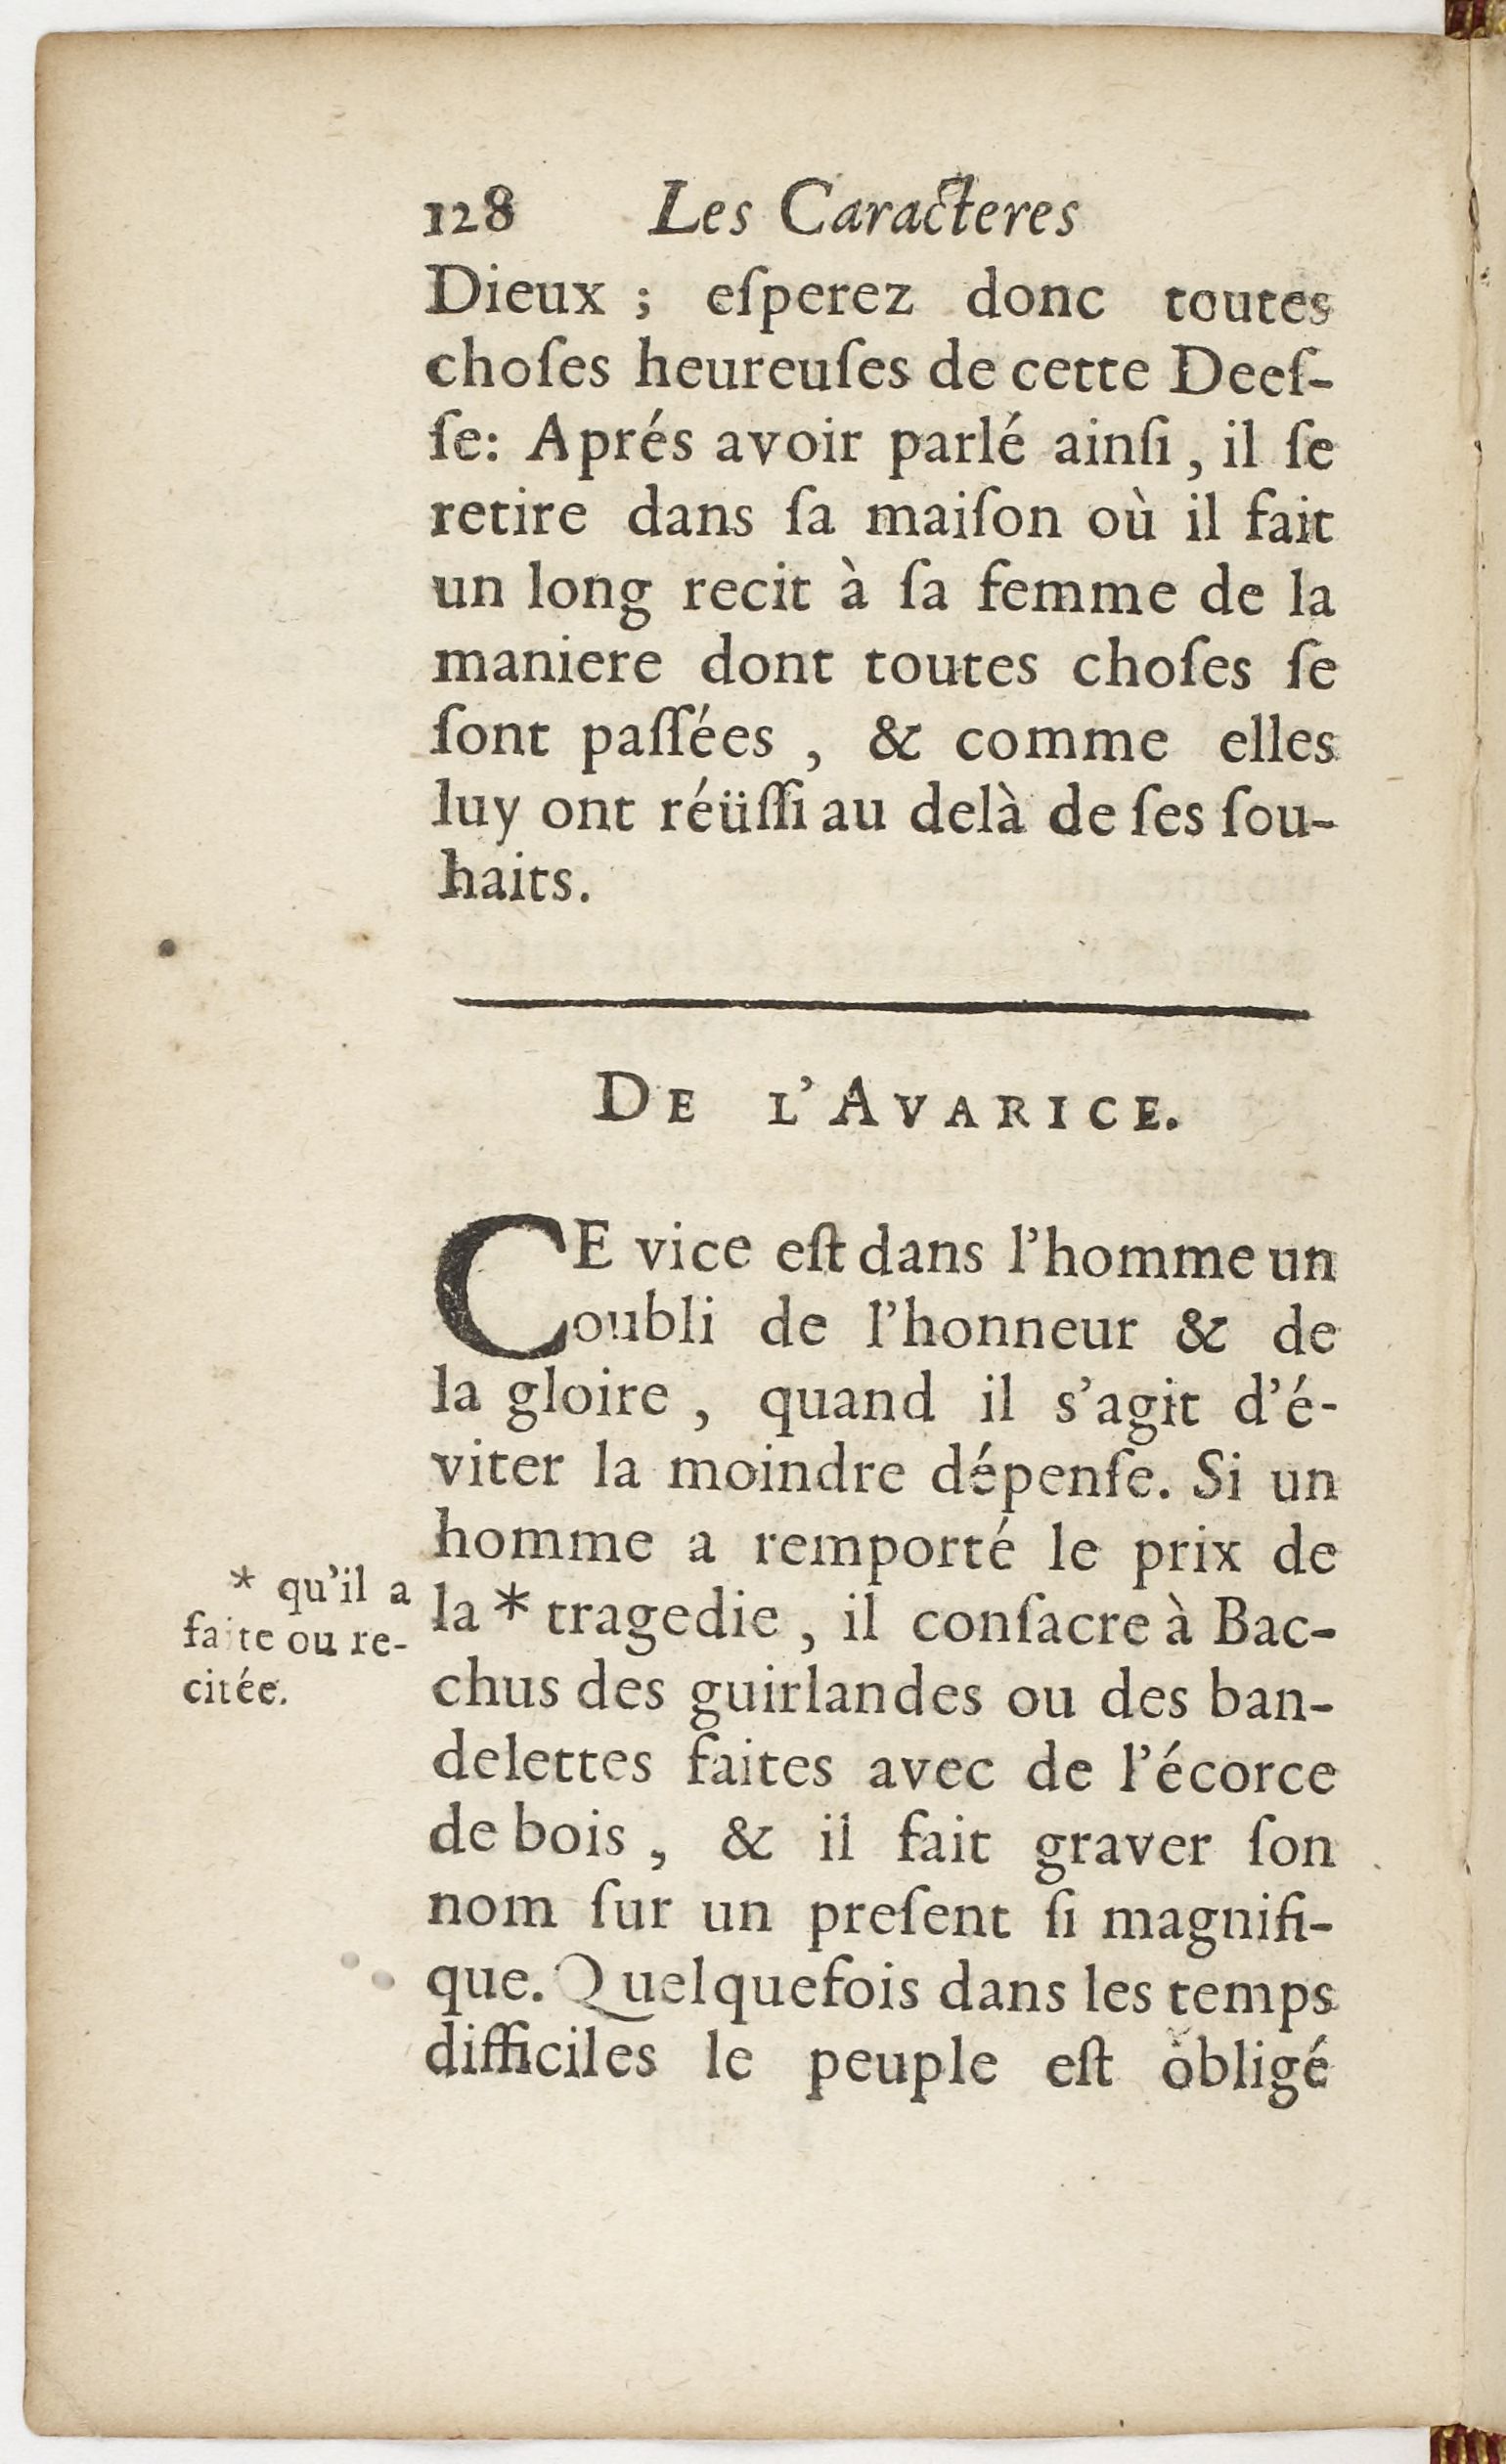 La Bruyère, Les Caractères, 1688, p. 128.